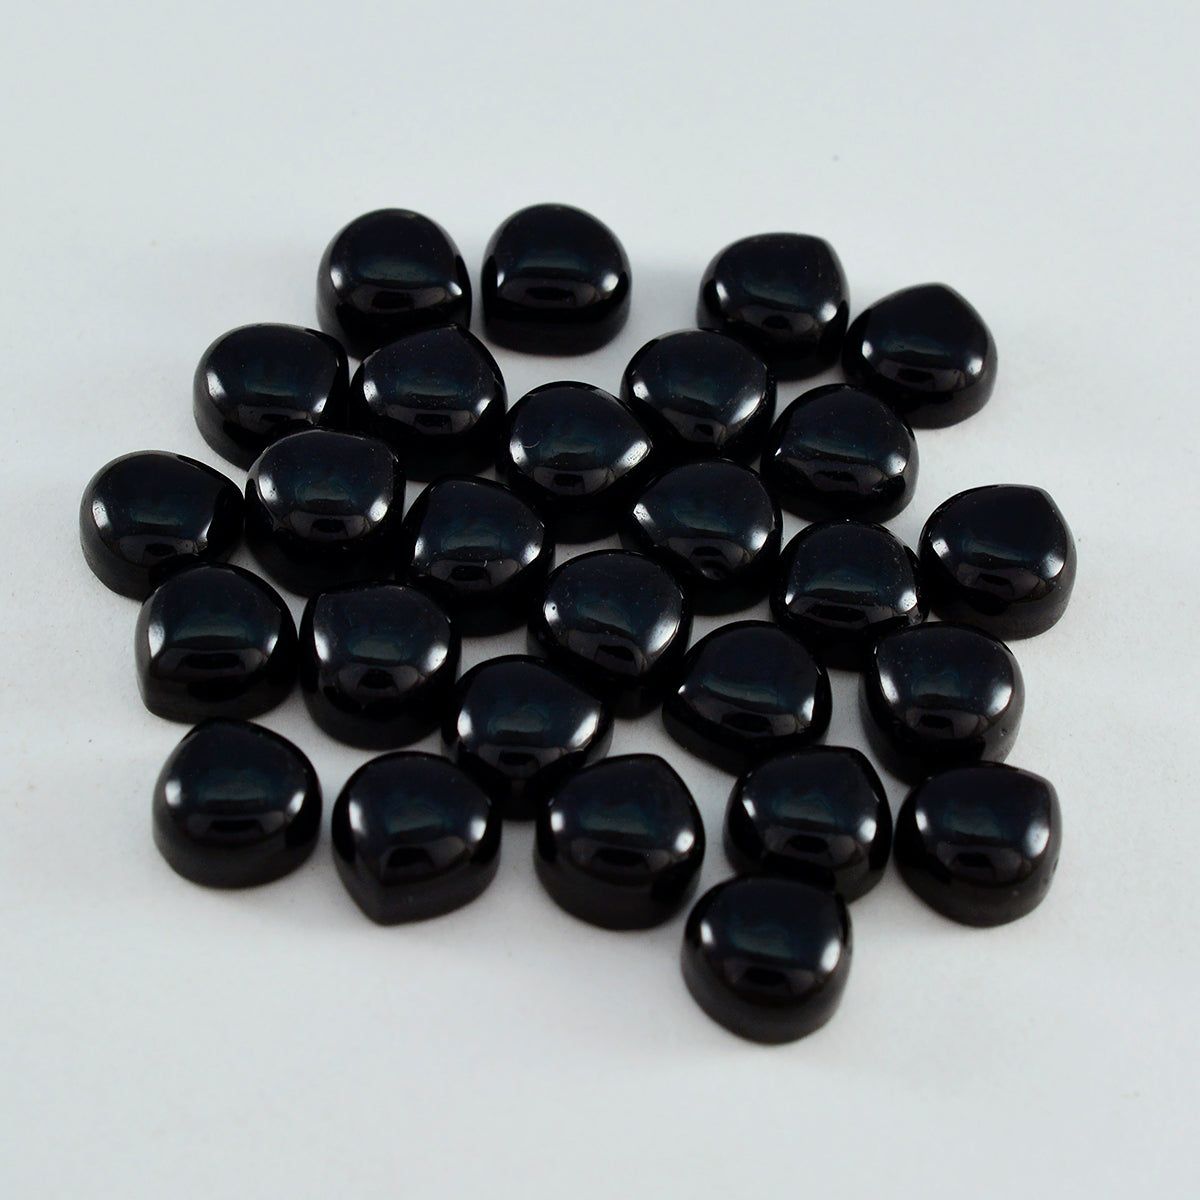 Riyogems 1 Stück schwarzer Onyx-Cabochon, 7 x 7 mm, Herzform, süßer, hochwertiger, loser Edelstein